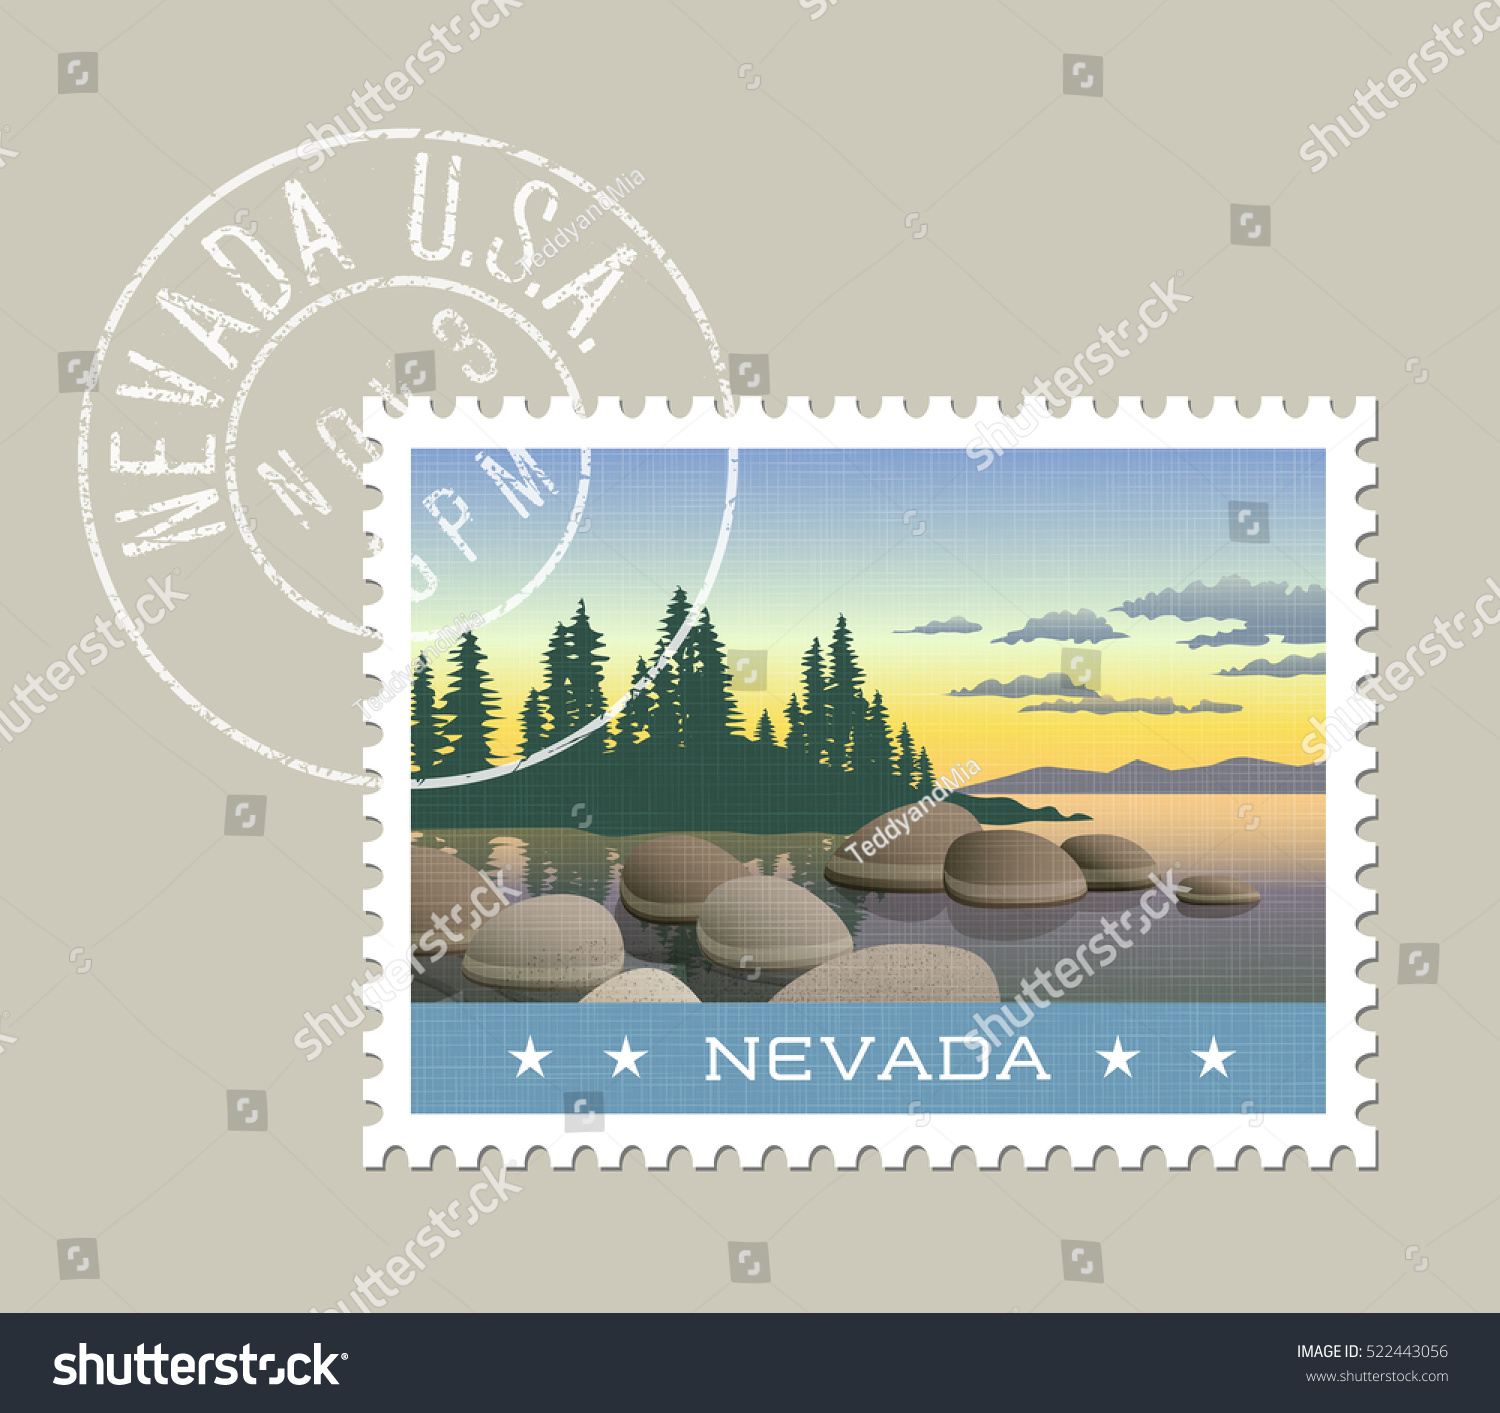 SVG of  Nevada postage stamp design. 
Vector illustration of Lake Tahoe shoreline. Grunge postmark on separate layer svg